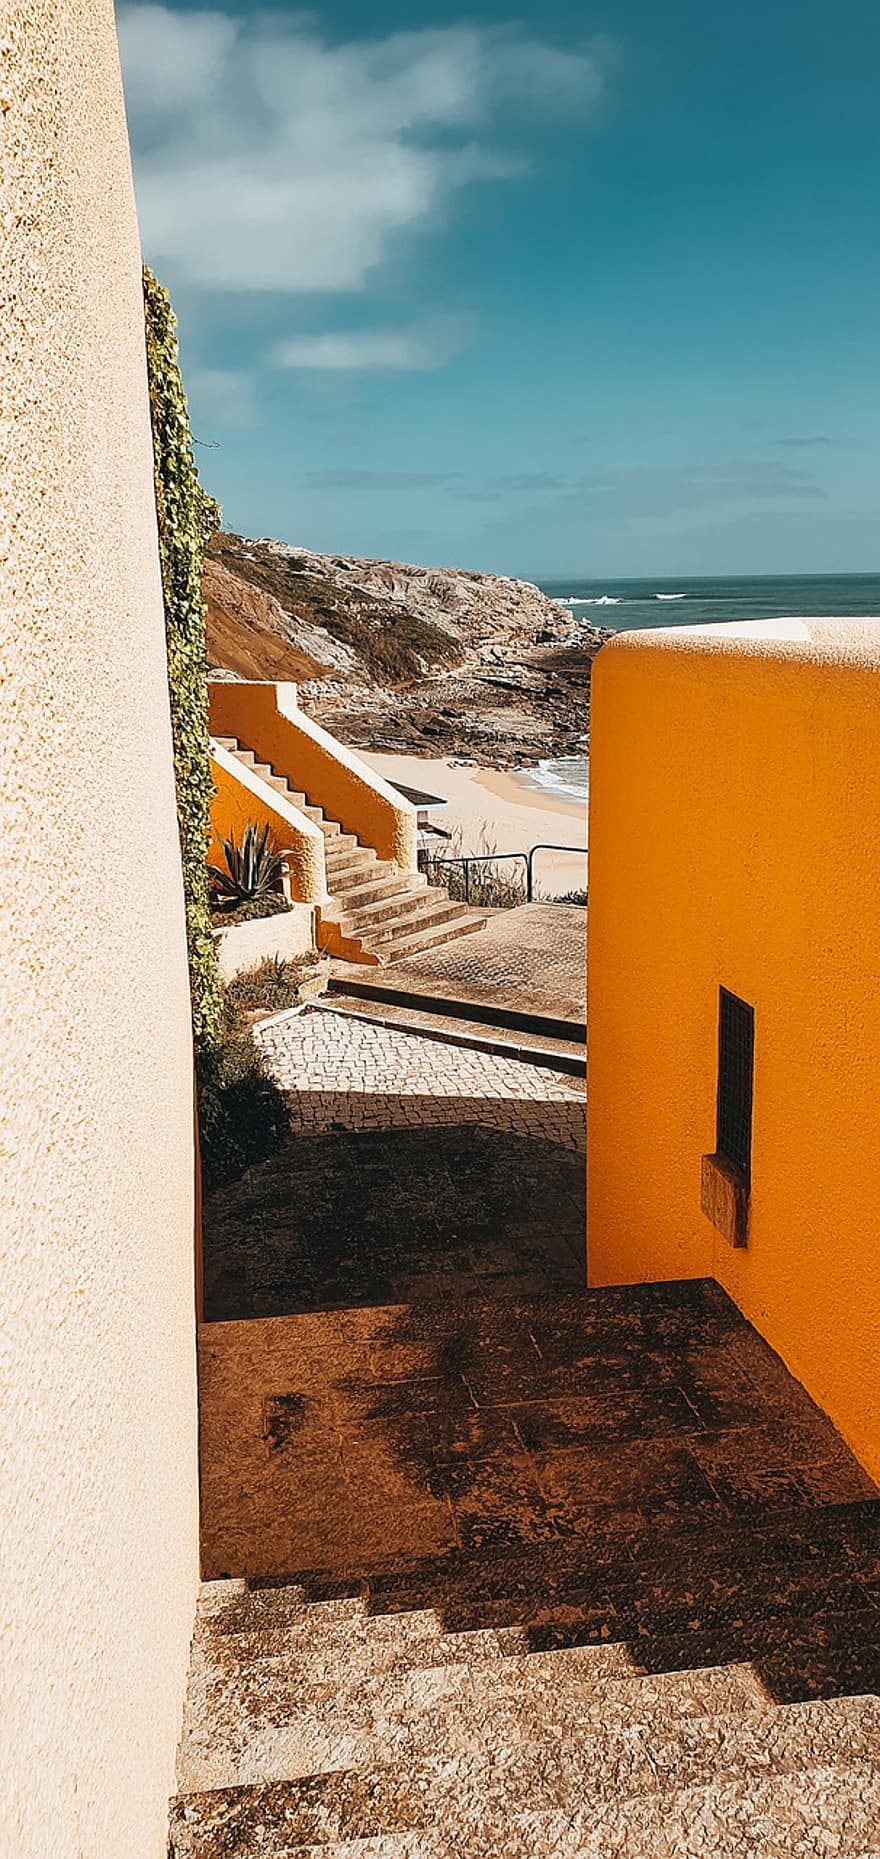 σκάλες, κτίρια, παραλία, άμμος, ωκεανός, ταξίδι, ο ΤΟΥΡΙΣΜΟΣ, φύση, Πορτογαλία, αρχιτεκτονική